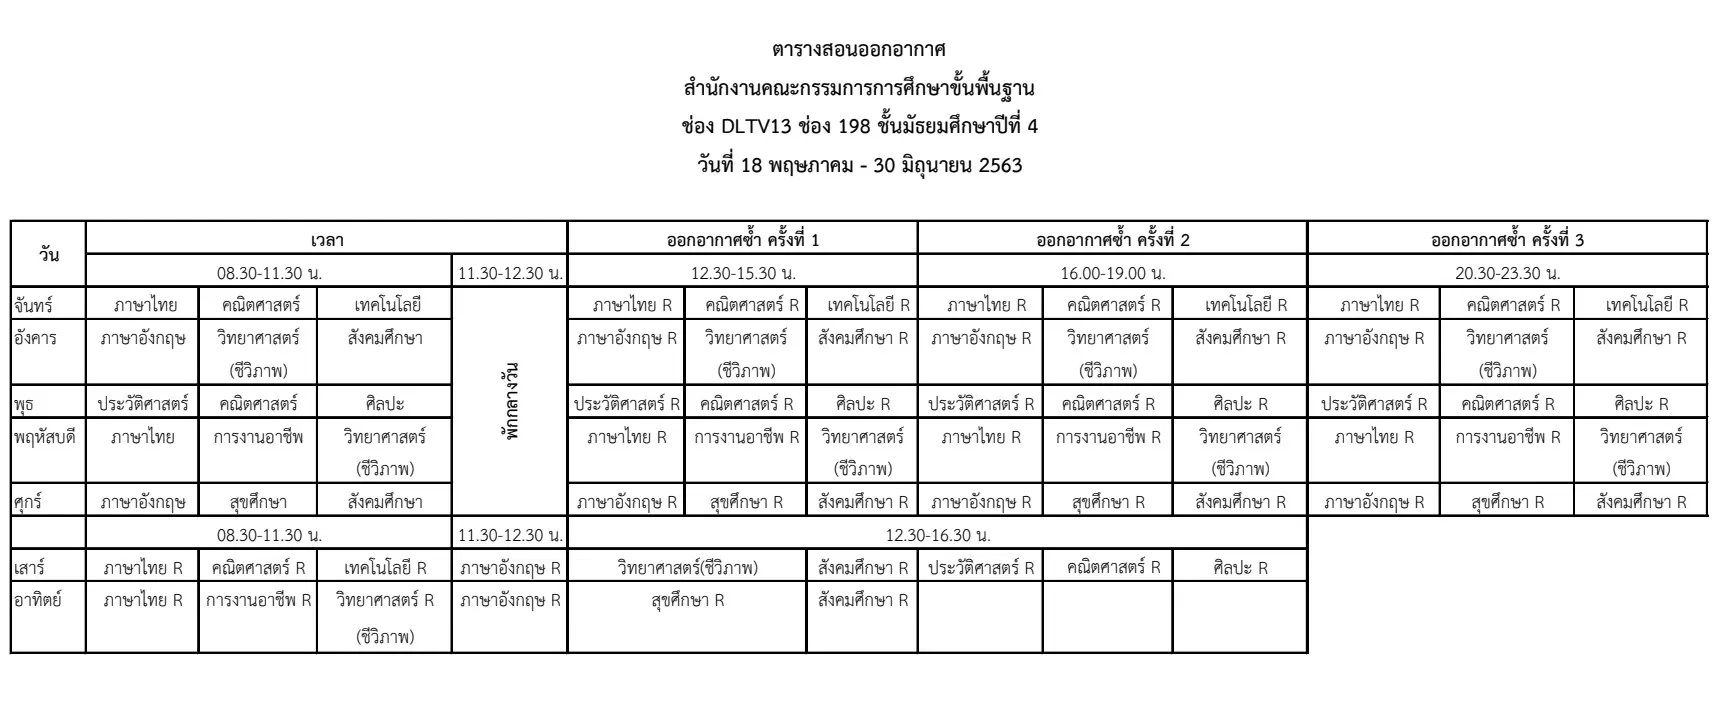 ดาวน์โหลดได้แล้ว ตารางสอนออกอากาศ DLTV ระดับชั้นมัธยมศึกษาปีที่ 4-6 ระหว่างวันที่ 18 พฤษภาคม - 30 มิถุนายน 2563